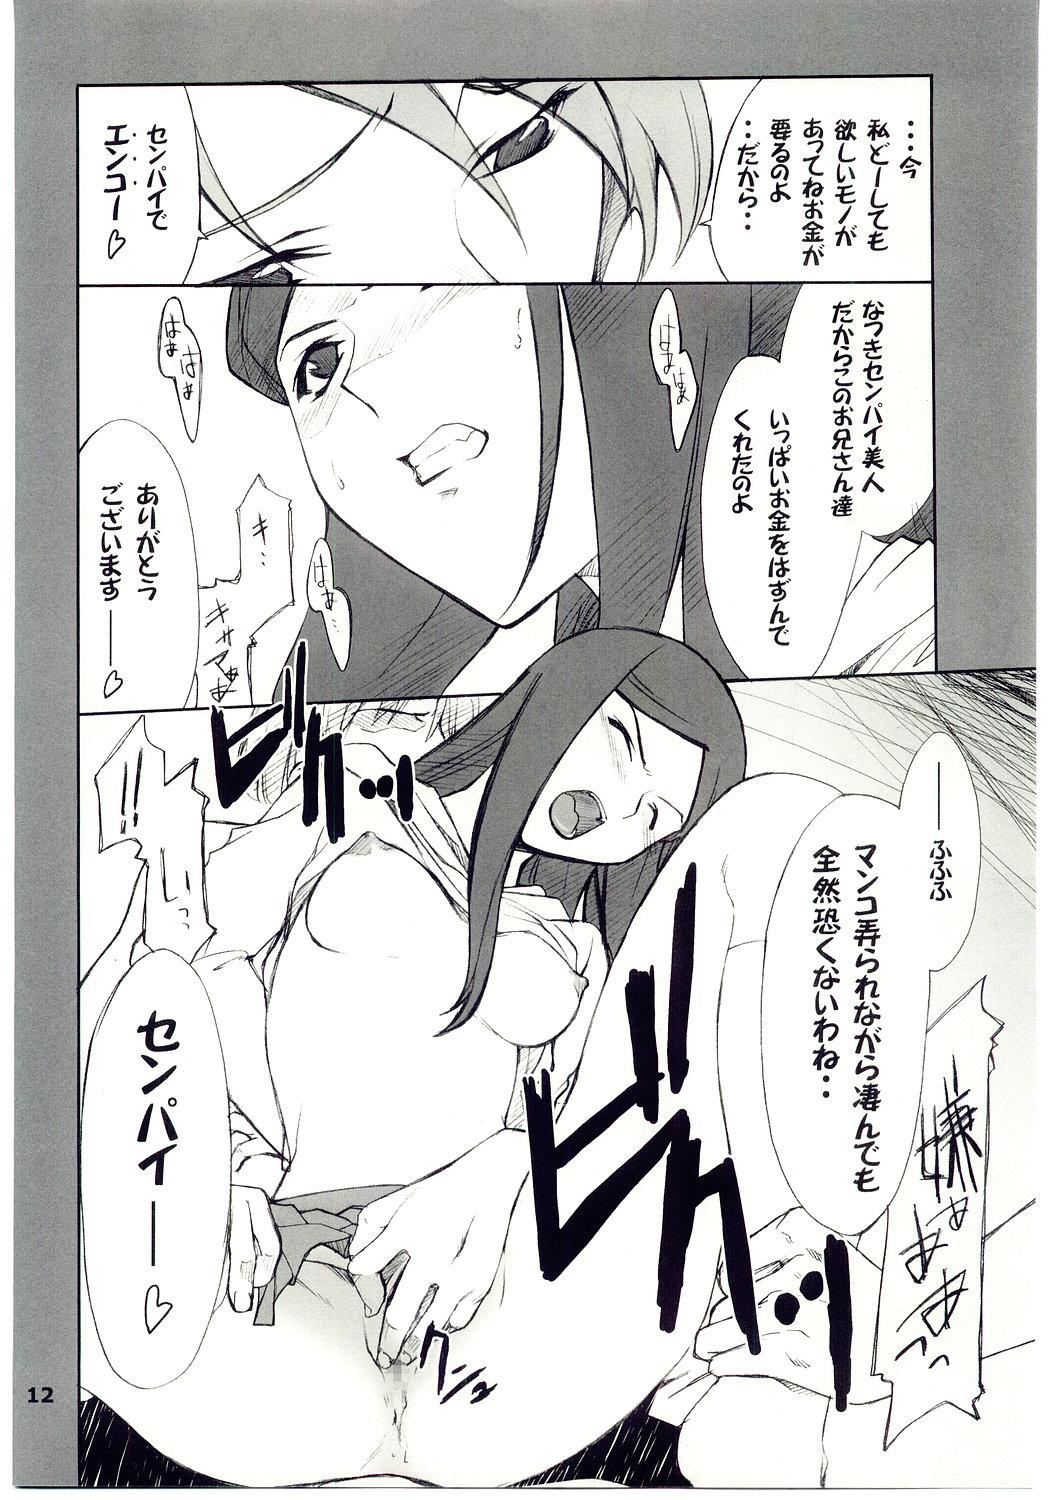 Bbc Kuga-chan to Iroiro - Mai-hime Girlfriend - Page 11